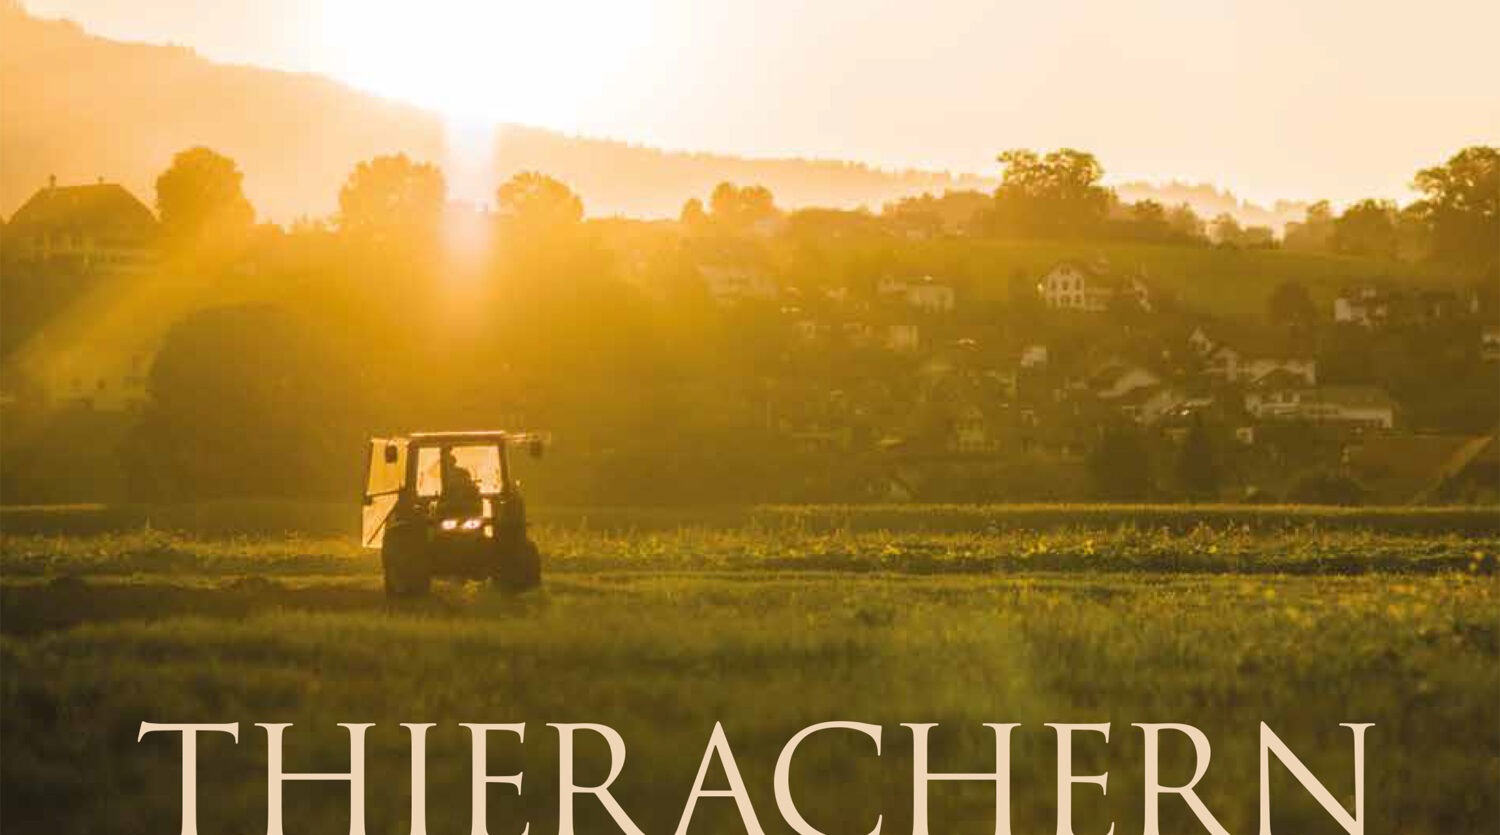 Dorfchronik Thierachern, Buchprojekt, Kapitelbilder, Landschaftsfotografie Schweiz; David Schweizer